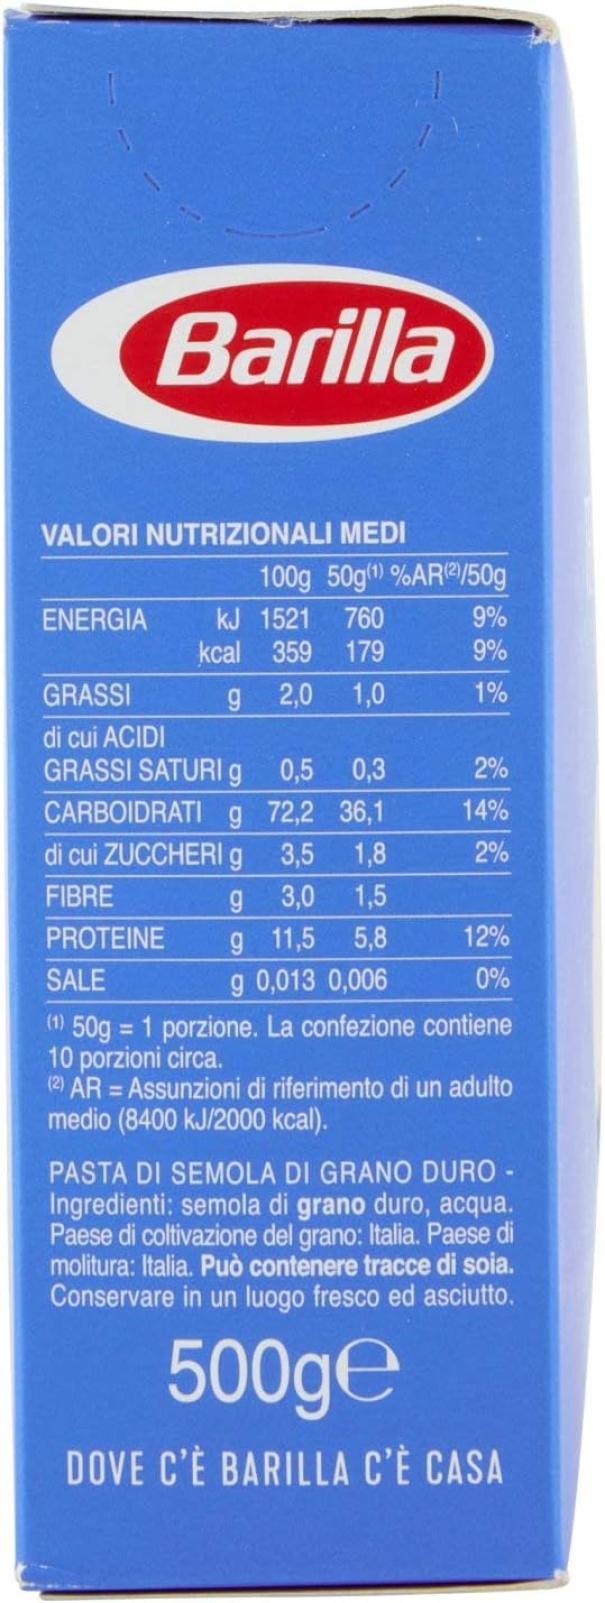 pasta-tempestine-barilla-500gr-2